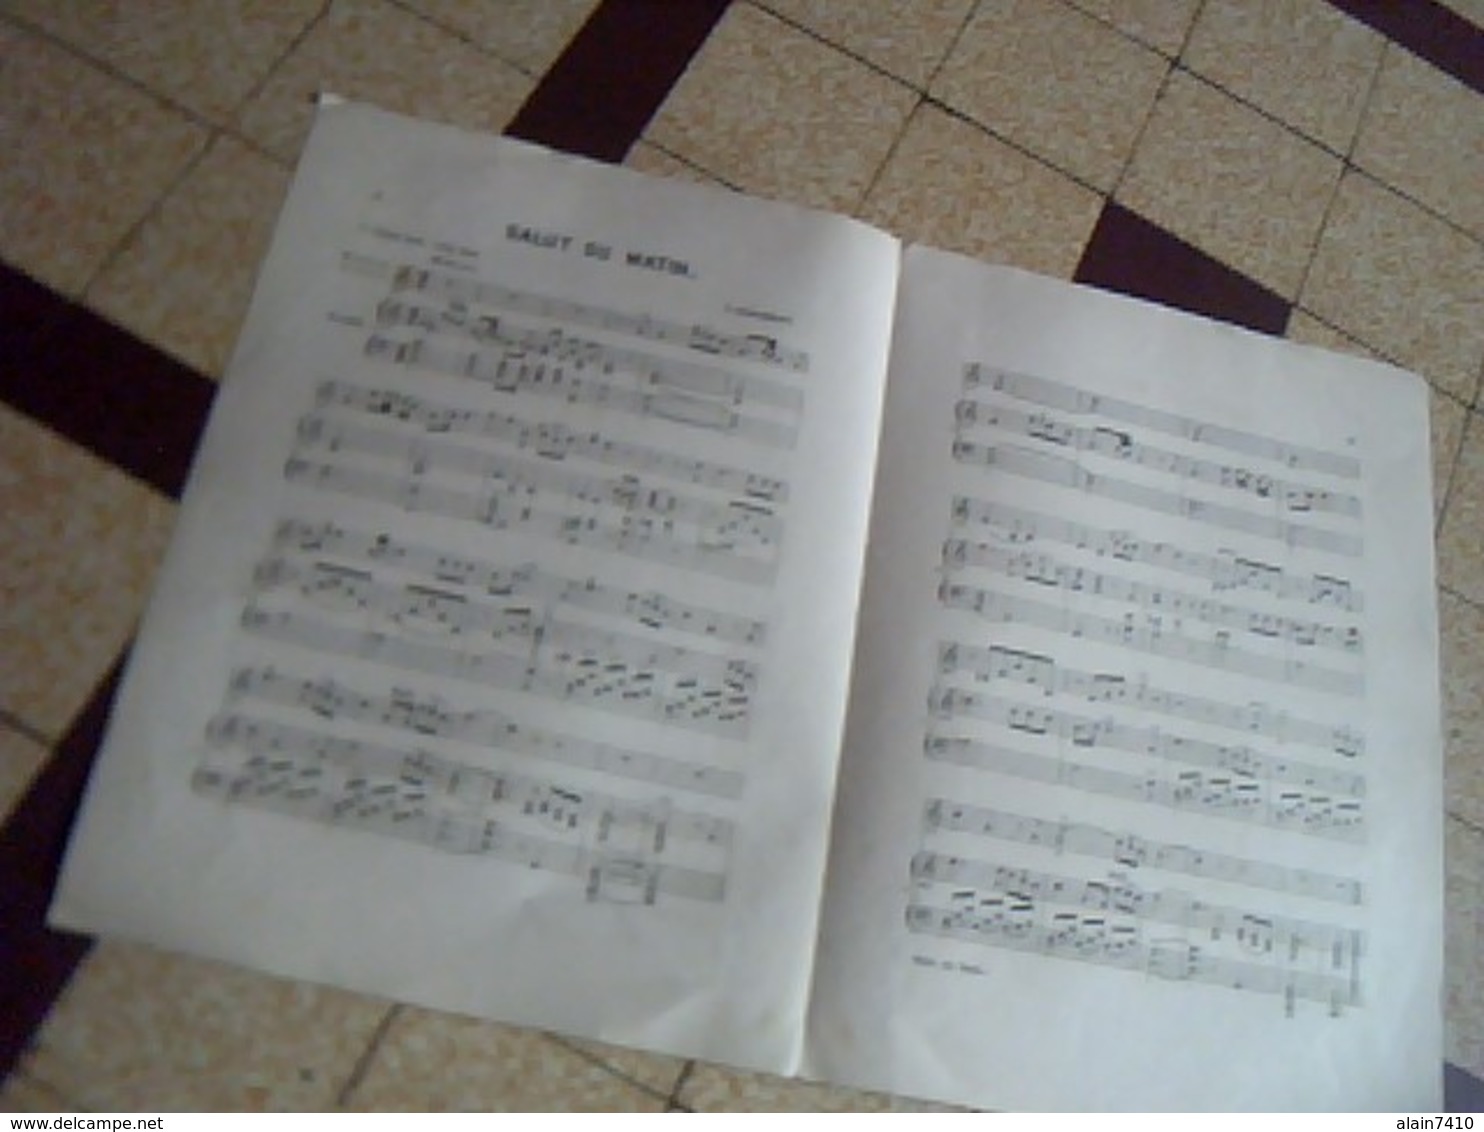 Vieux Papier  Partition 4 Pages SALUT DU MATIN Mandoline ; Violon & Piano De Joseph Meissler - Compositori Di Commedie Musicali